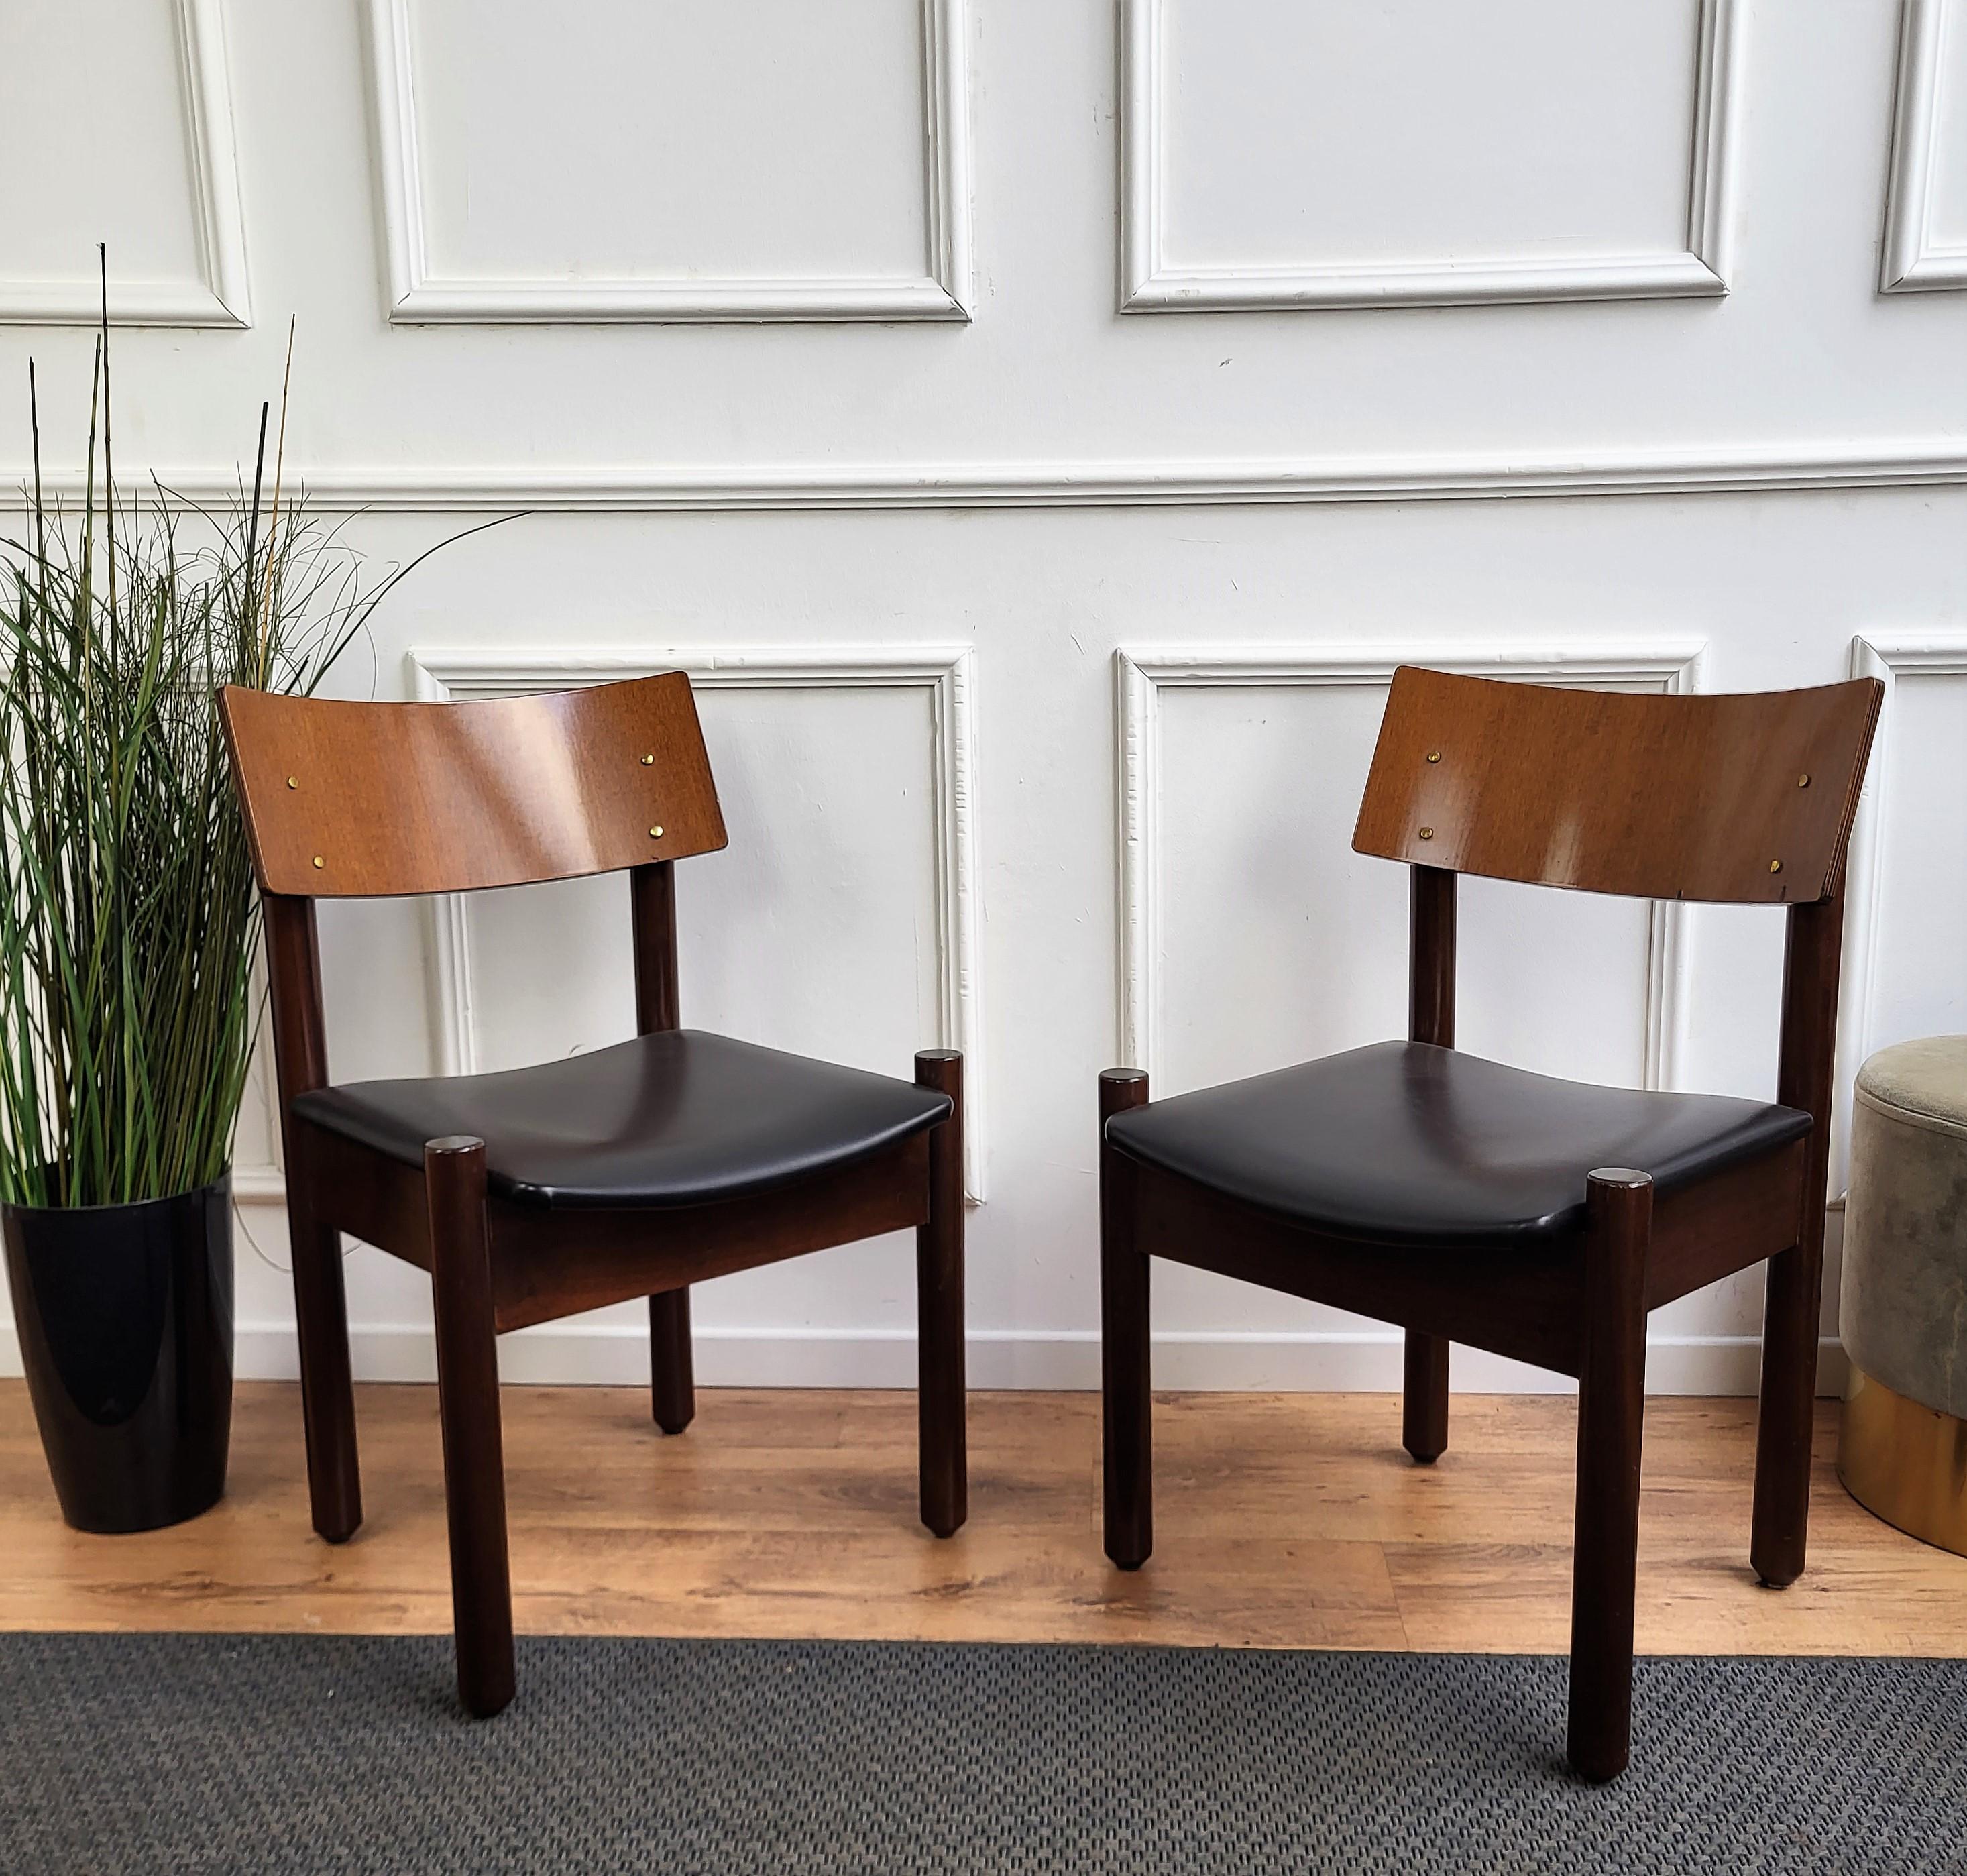 Schönes und stilvolles italienisches Mid-Century Modern Set von 6 Esszimmerstühlen, mit stark gearbeiteter und geformter Holzstruktur und schwarz gepolstertem Sitz. Das einzigartige und typische Design mit der klaren geometrischen Form und dem Dekor